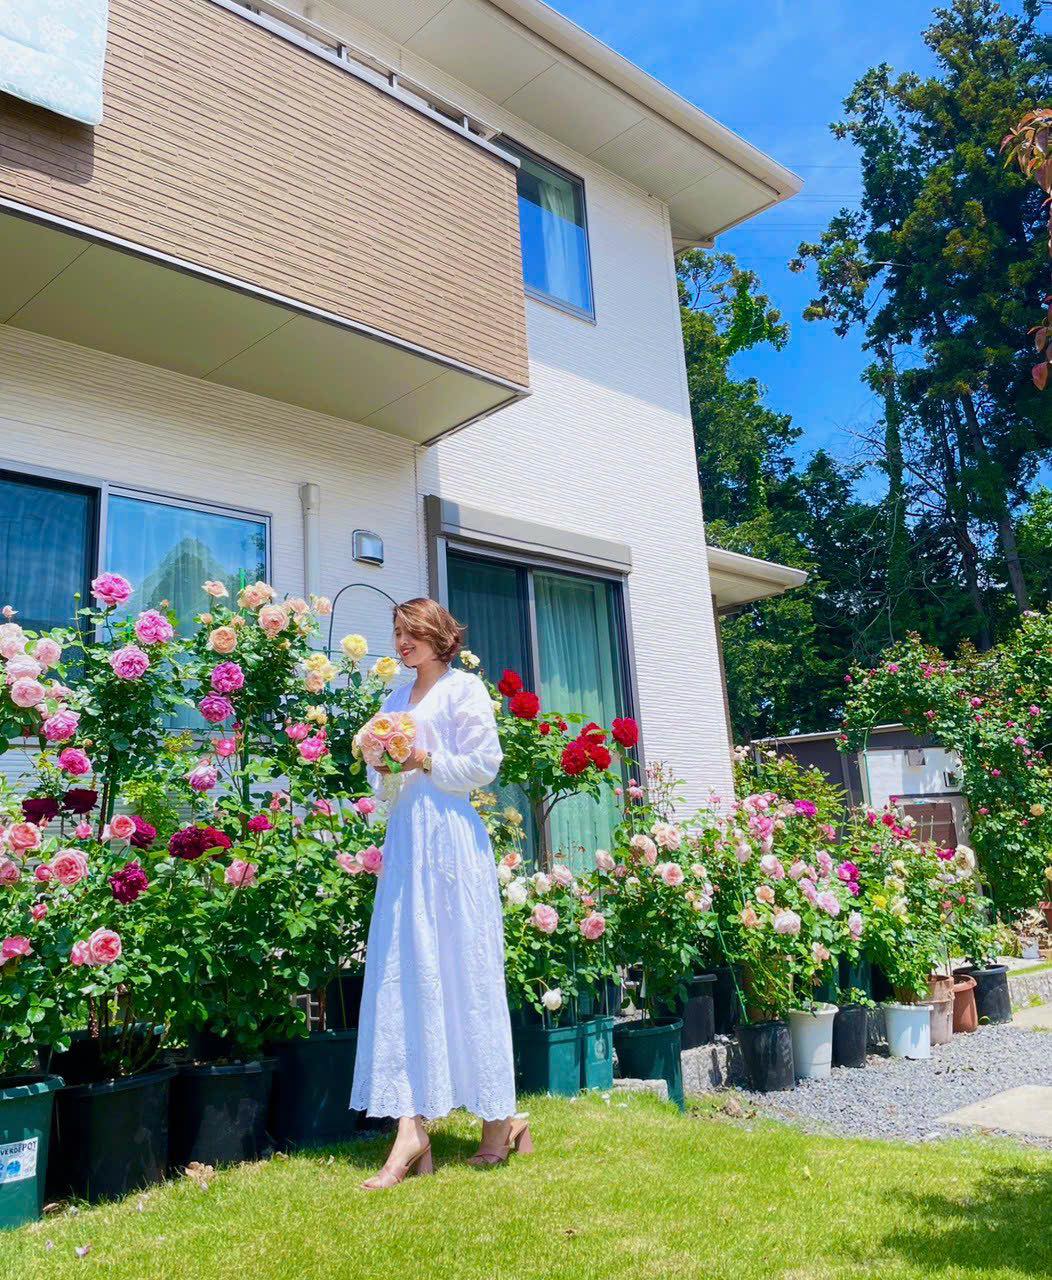 Ngôi nhà lúc nào cũng thơm nức mùi hoa vì có vườn hồng hơn 80 loại của mẹ Việt ở Nhật- Ảnh 22.